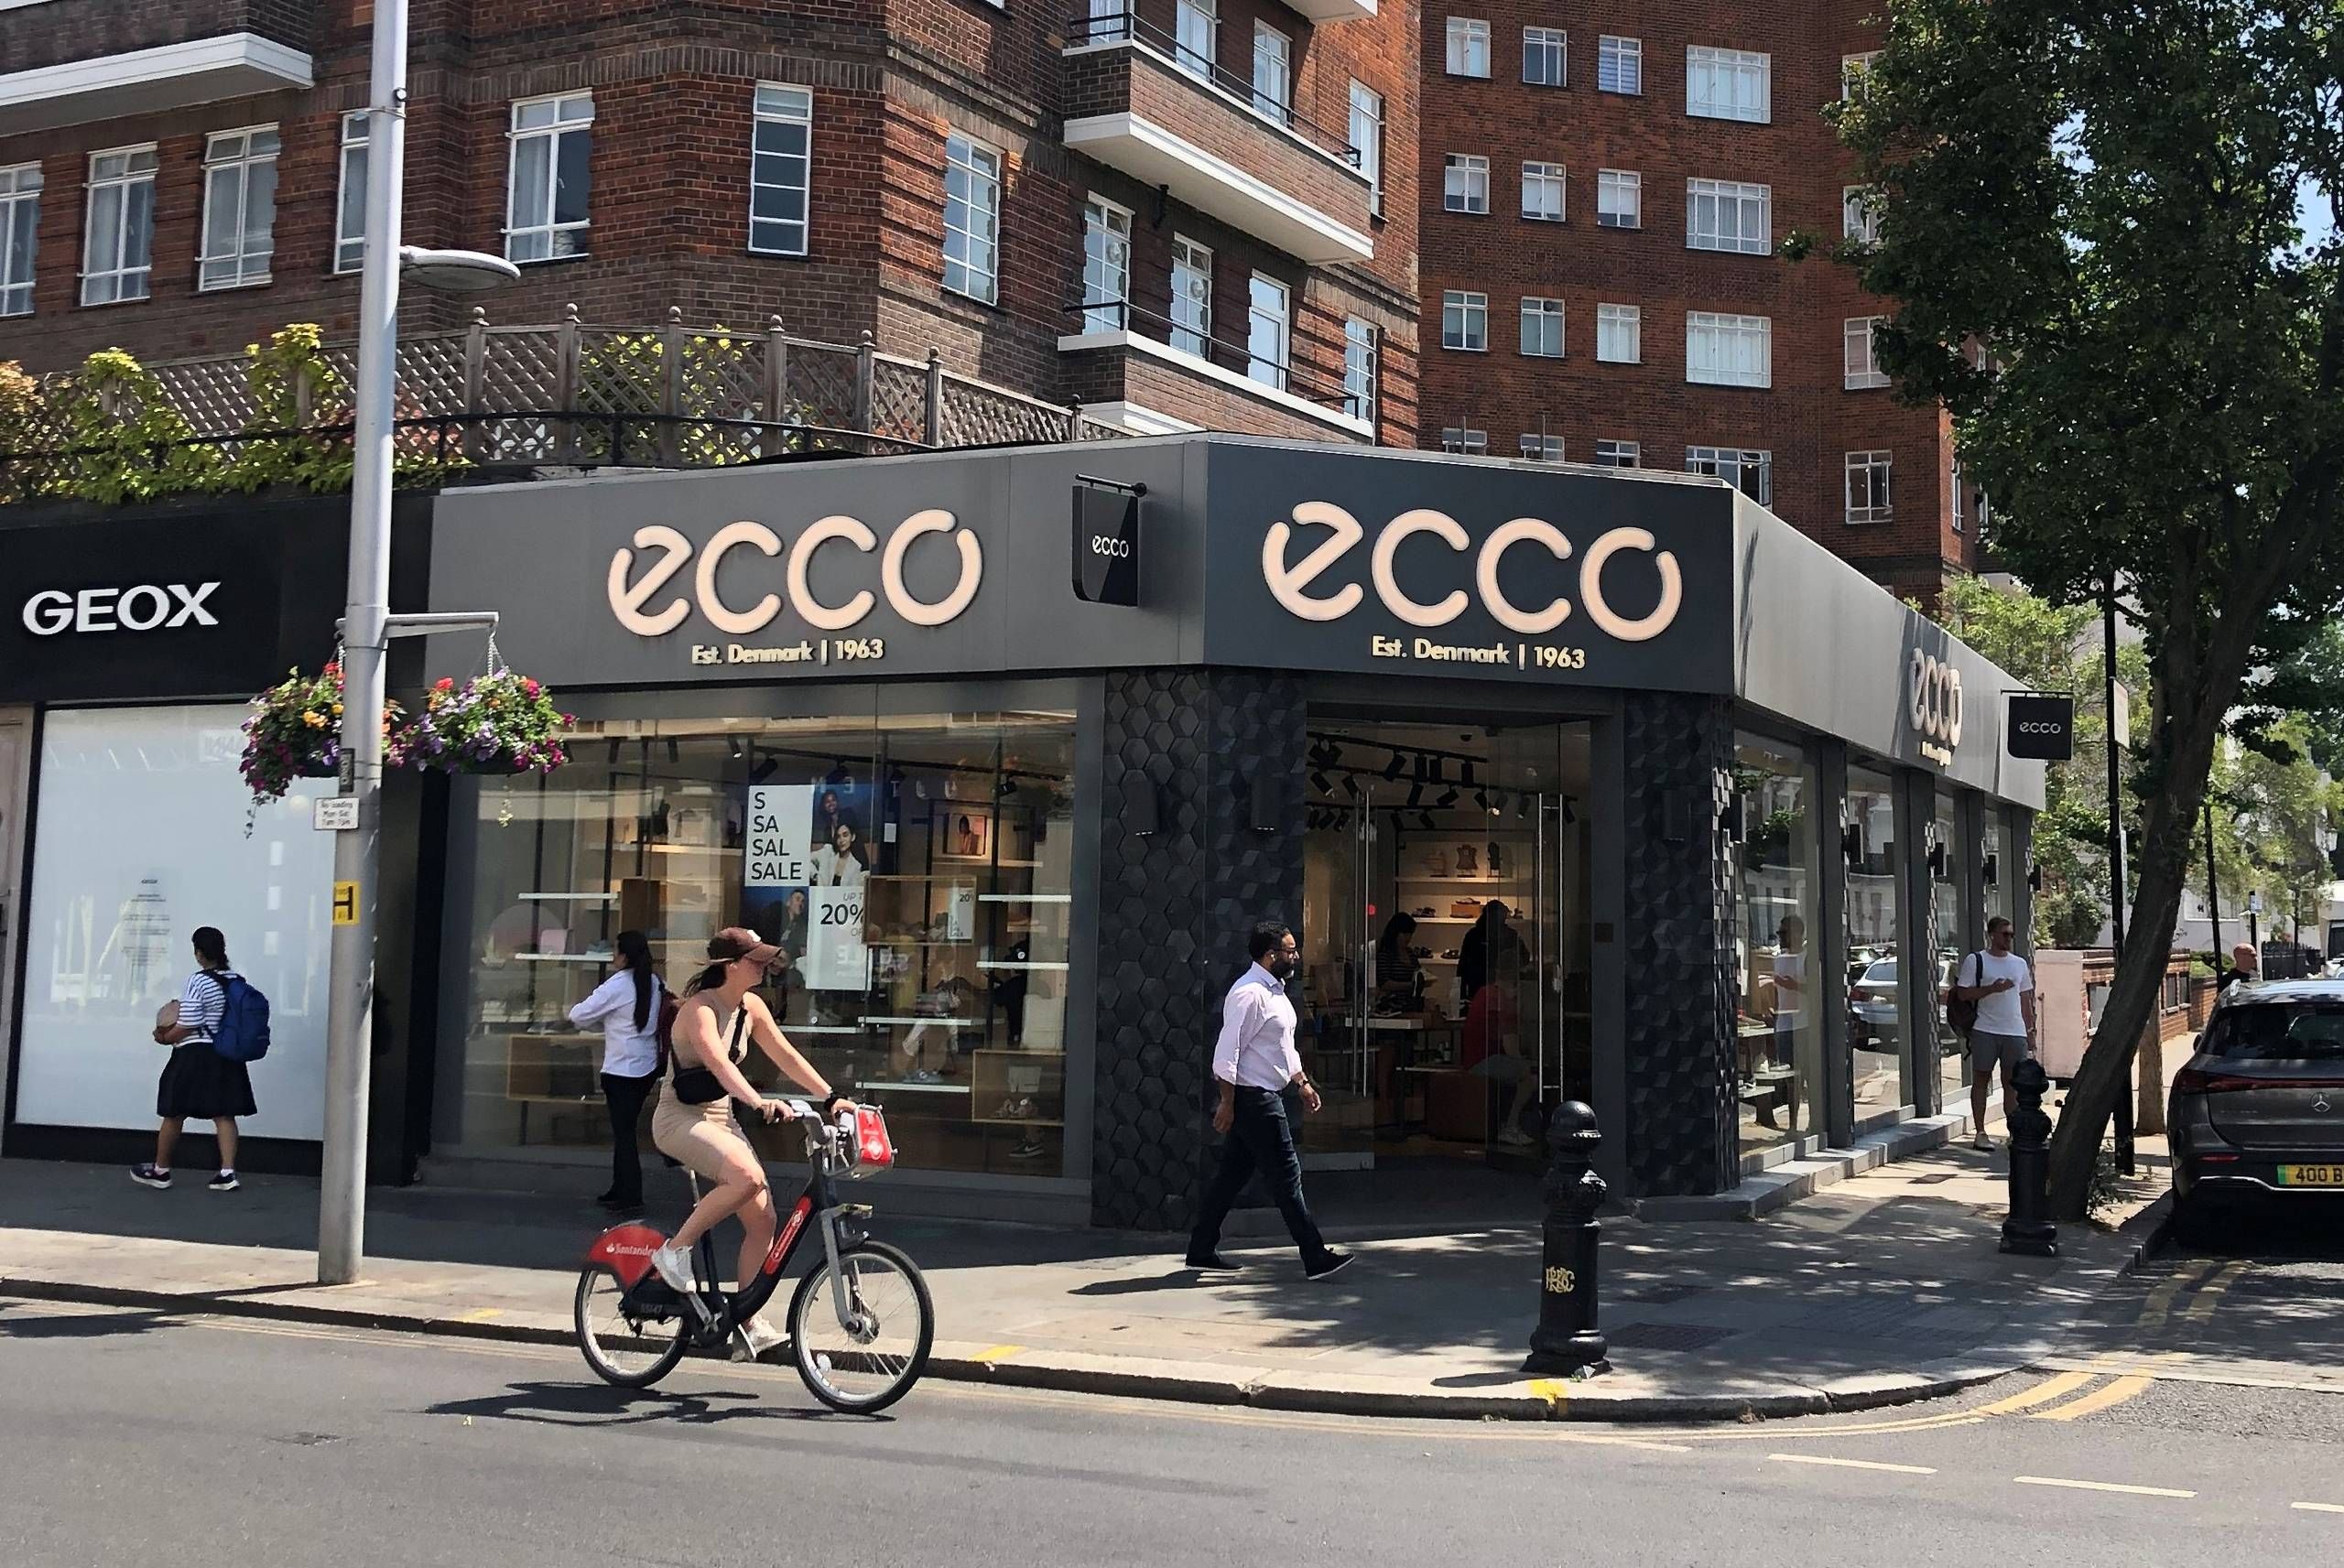 horisont Massakre Meningsfuld Boykottet er blevet droppet: Brancheformand forsvarer salg af Ecco-sko